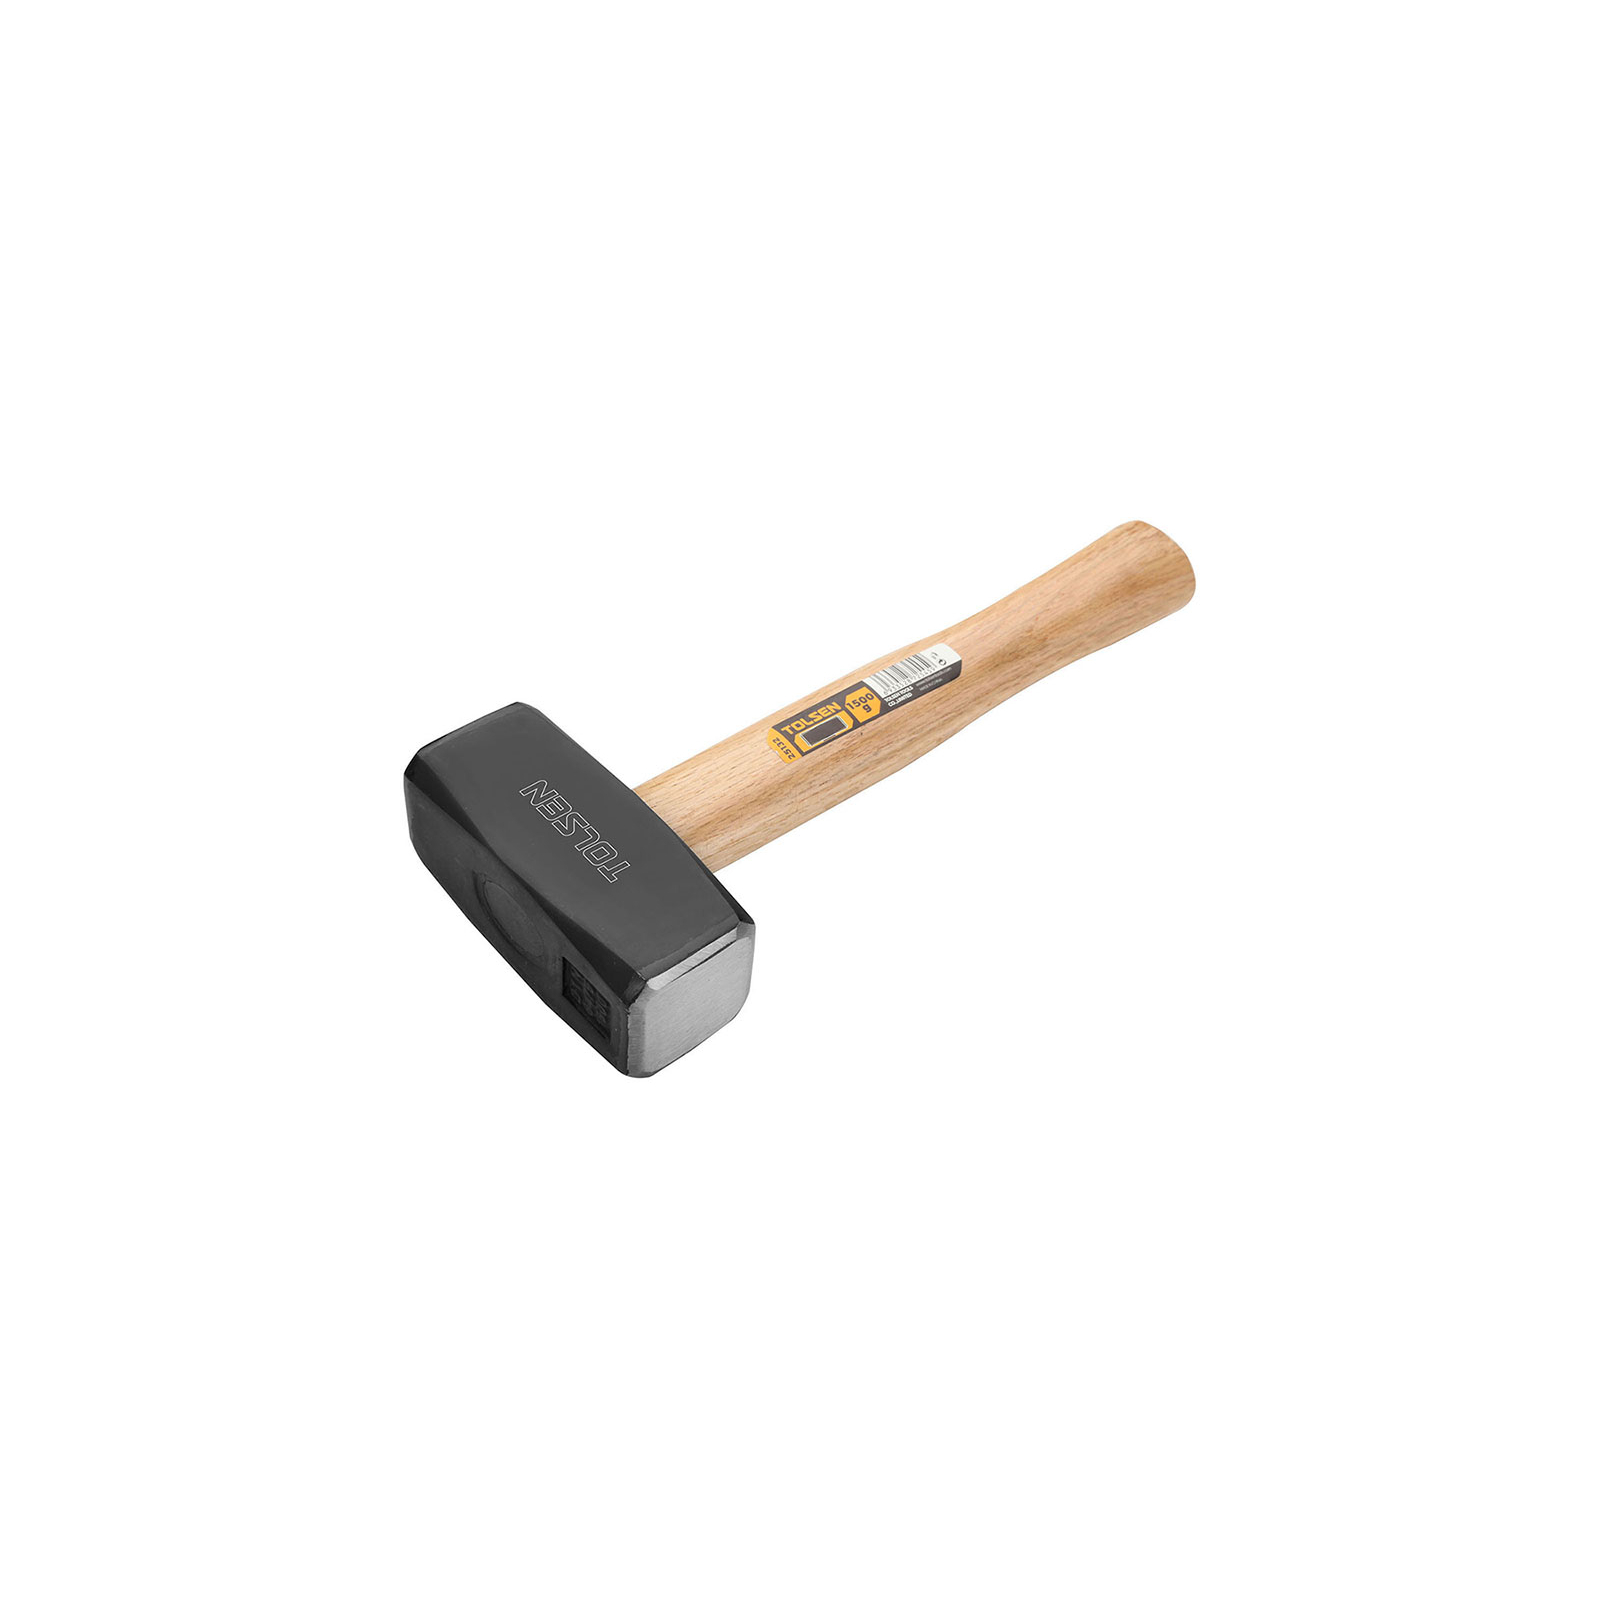 Кувалда Tolsen 1 кг дерев'яна ручка (25130)